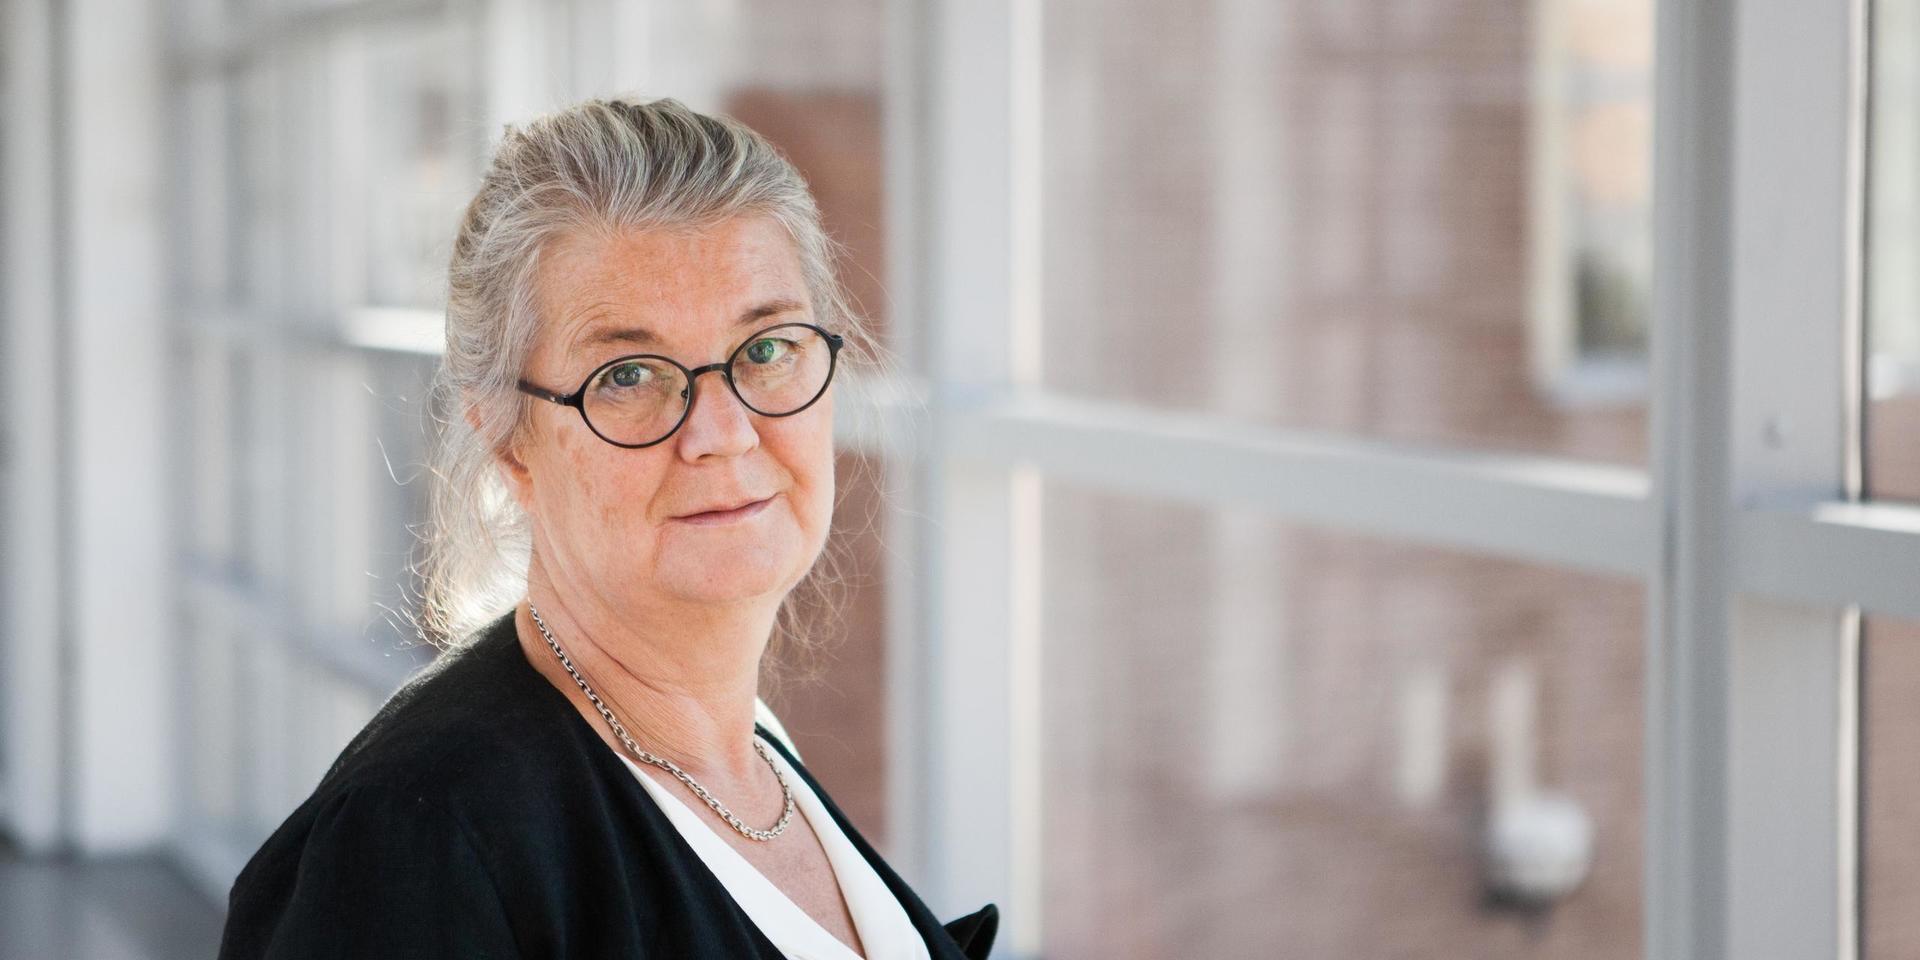 Elisabeth Dahlborg är professor i vårdvetenskap på Högskolan Väst.